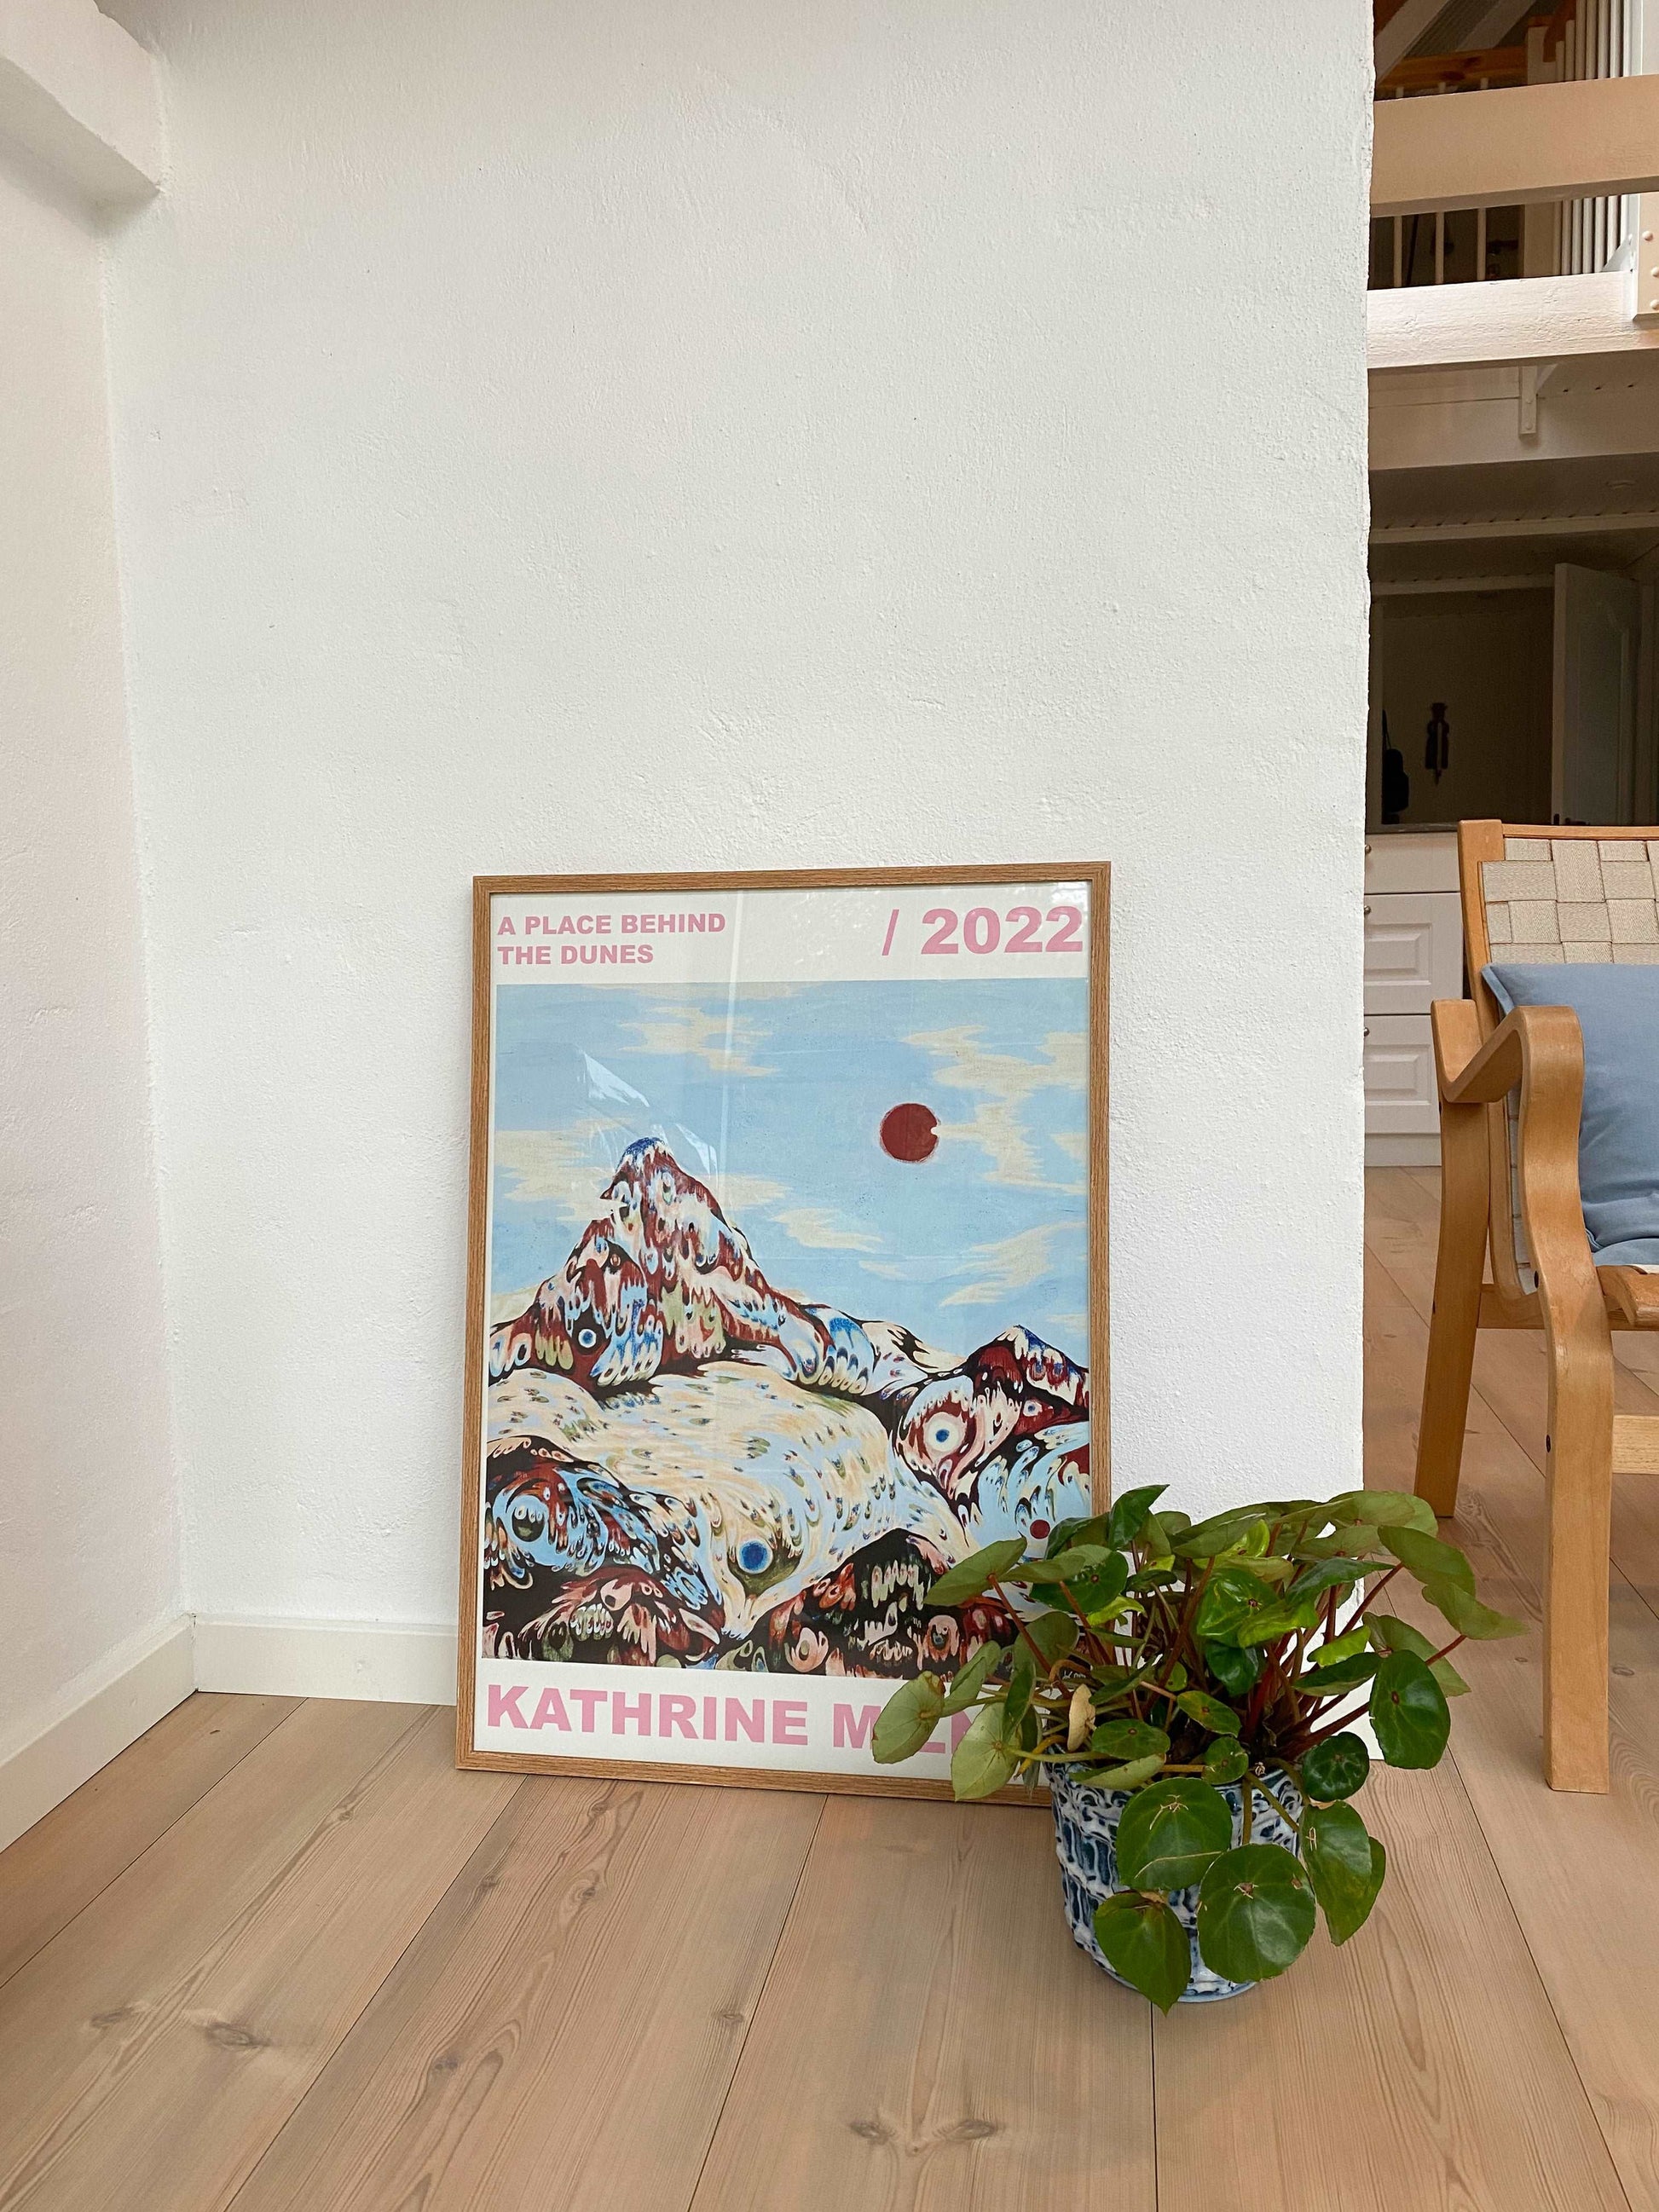 Kunstplakaten A place behind the dunes af Kathrine Milner i størrelse 70 x 100 cm